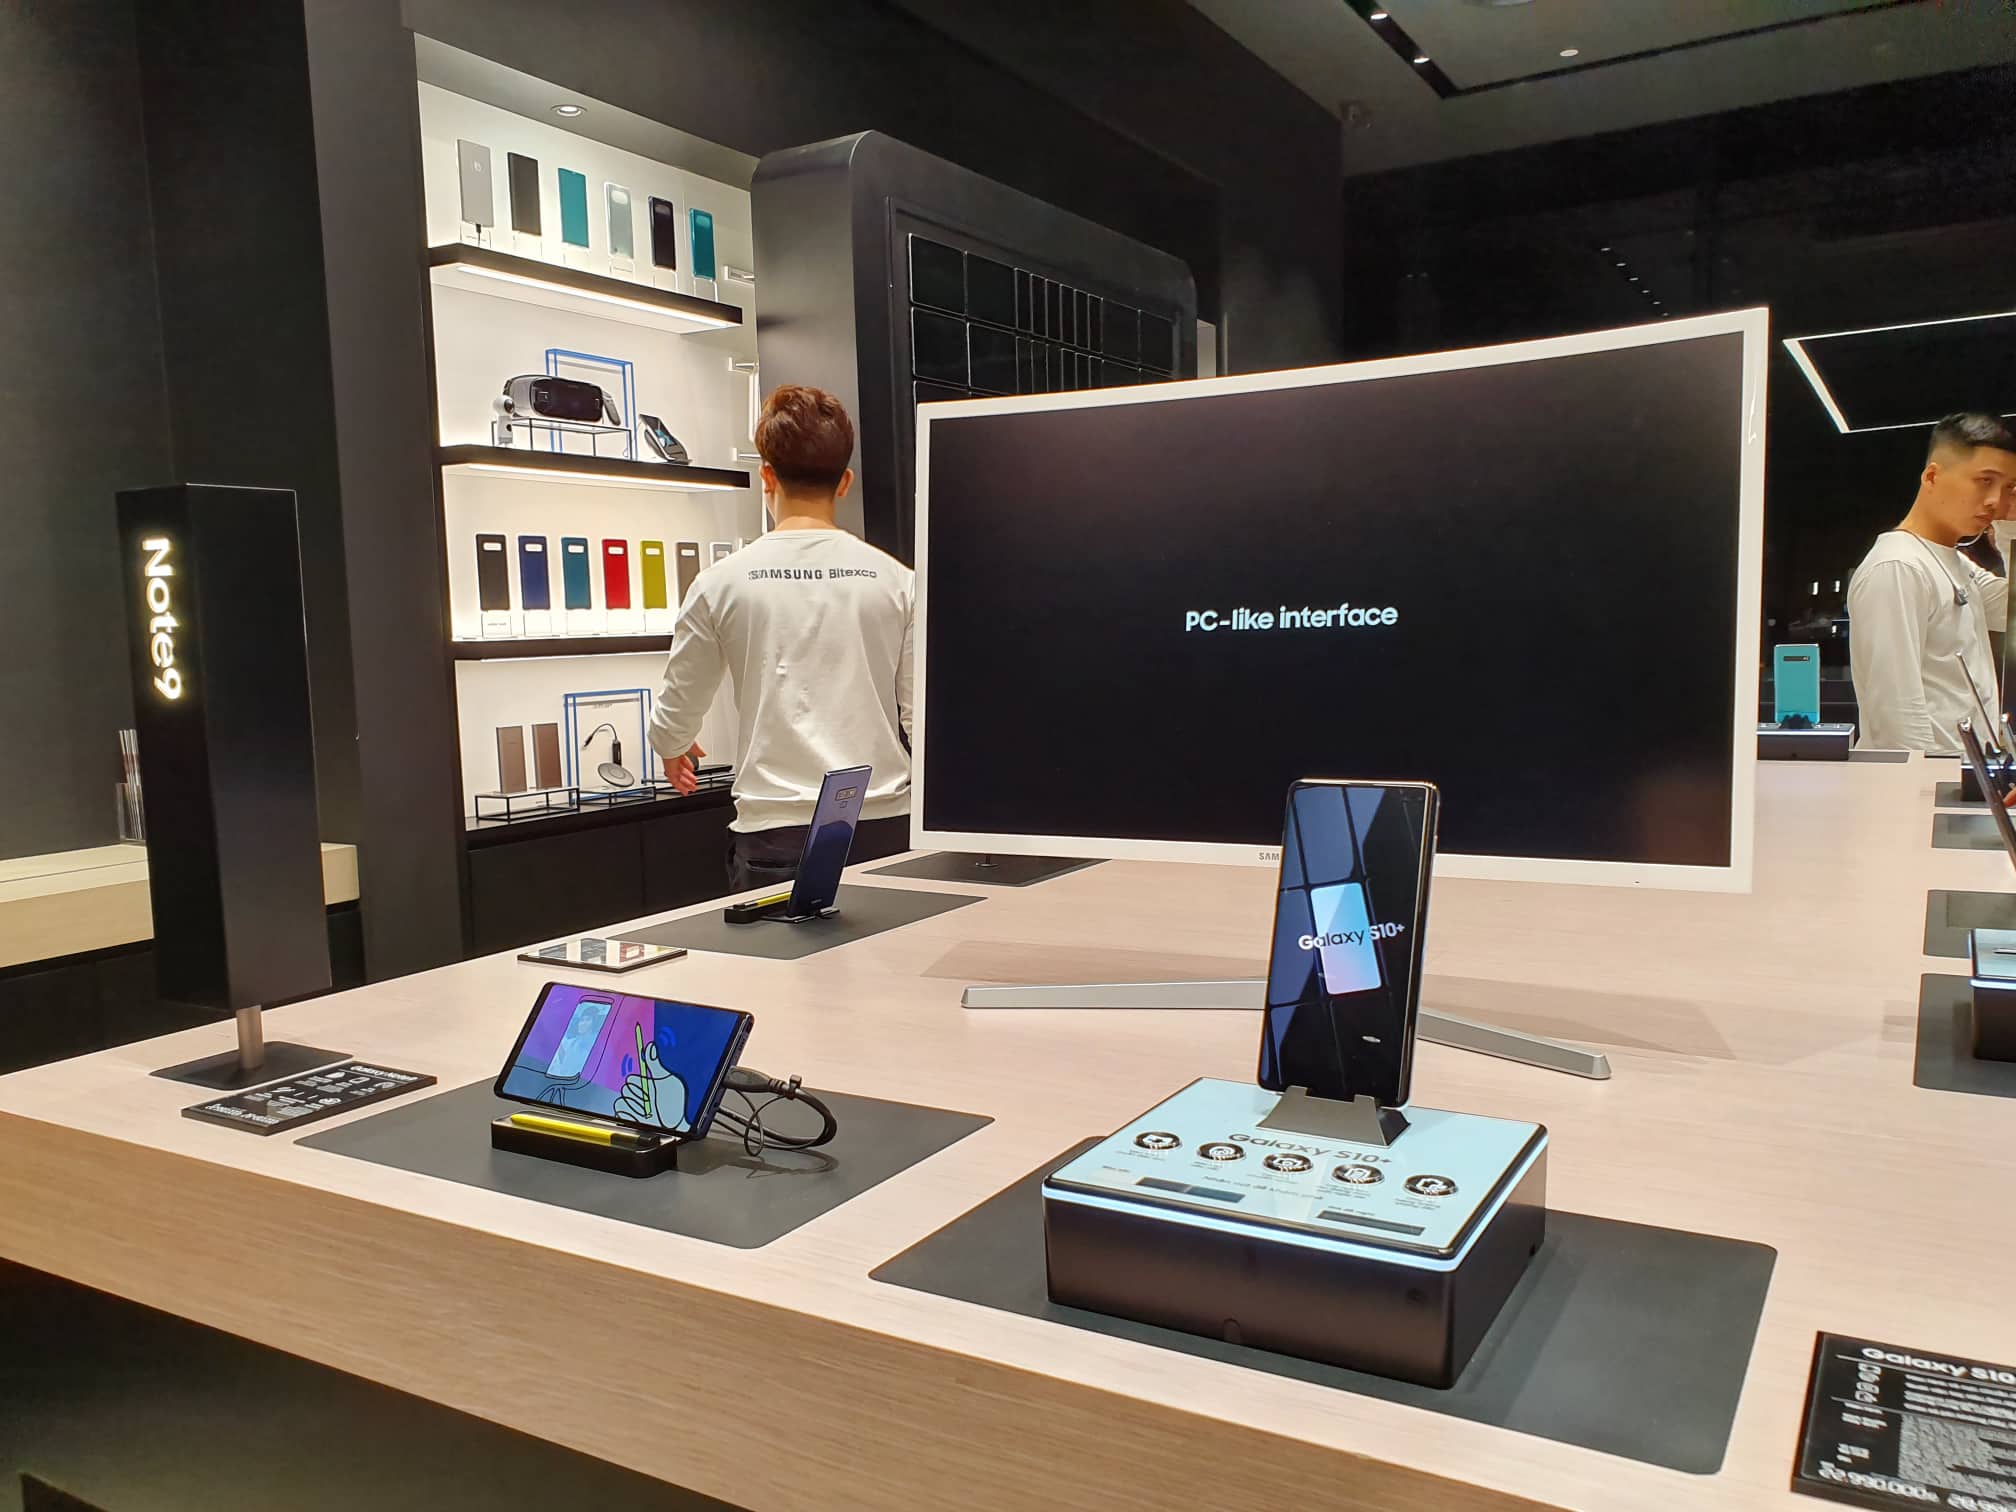 Samsung Showcase chính thức ra mắt, đem mô hình triển lãm và trải nghiệm công nghệ hiện đại trên thế giới đến Việt Nam